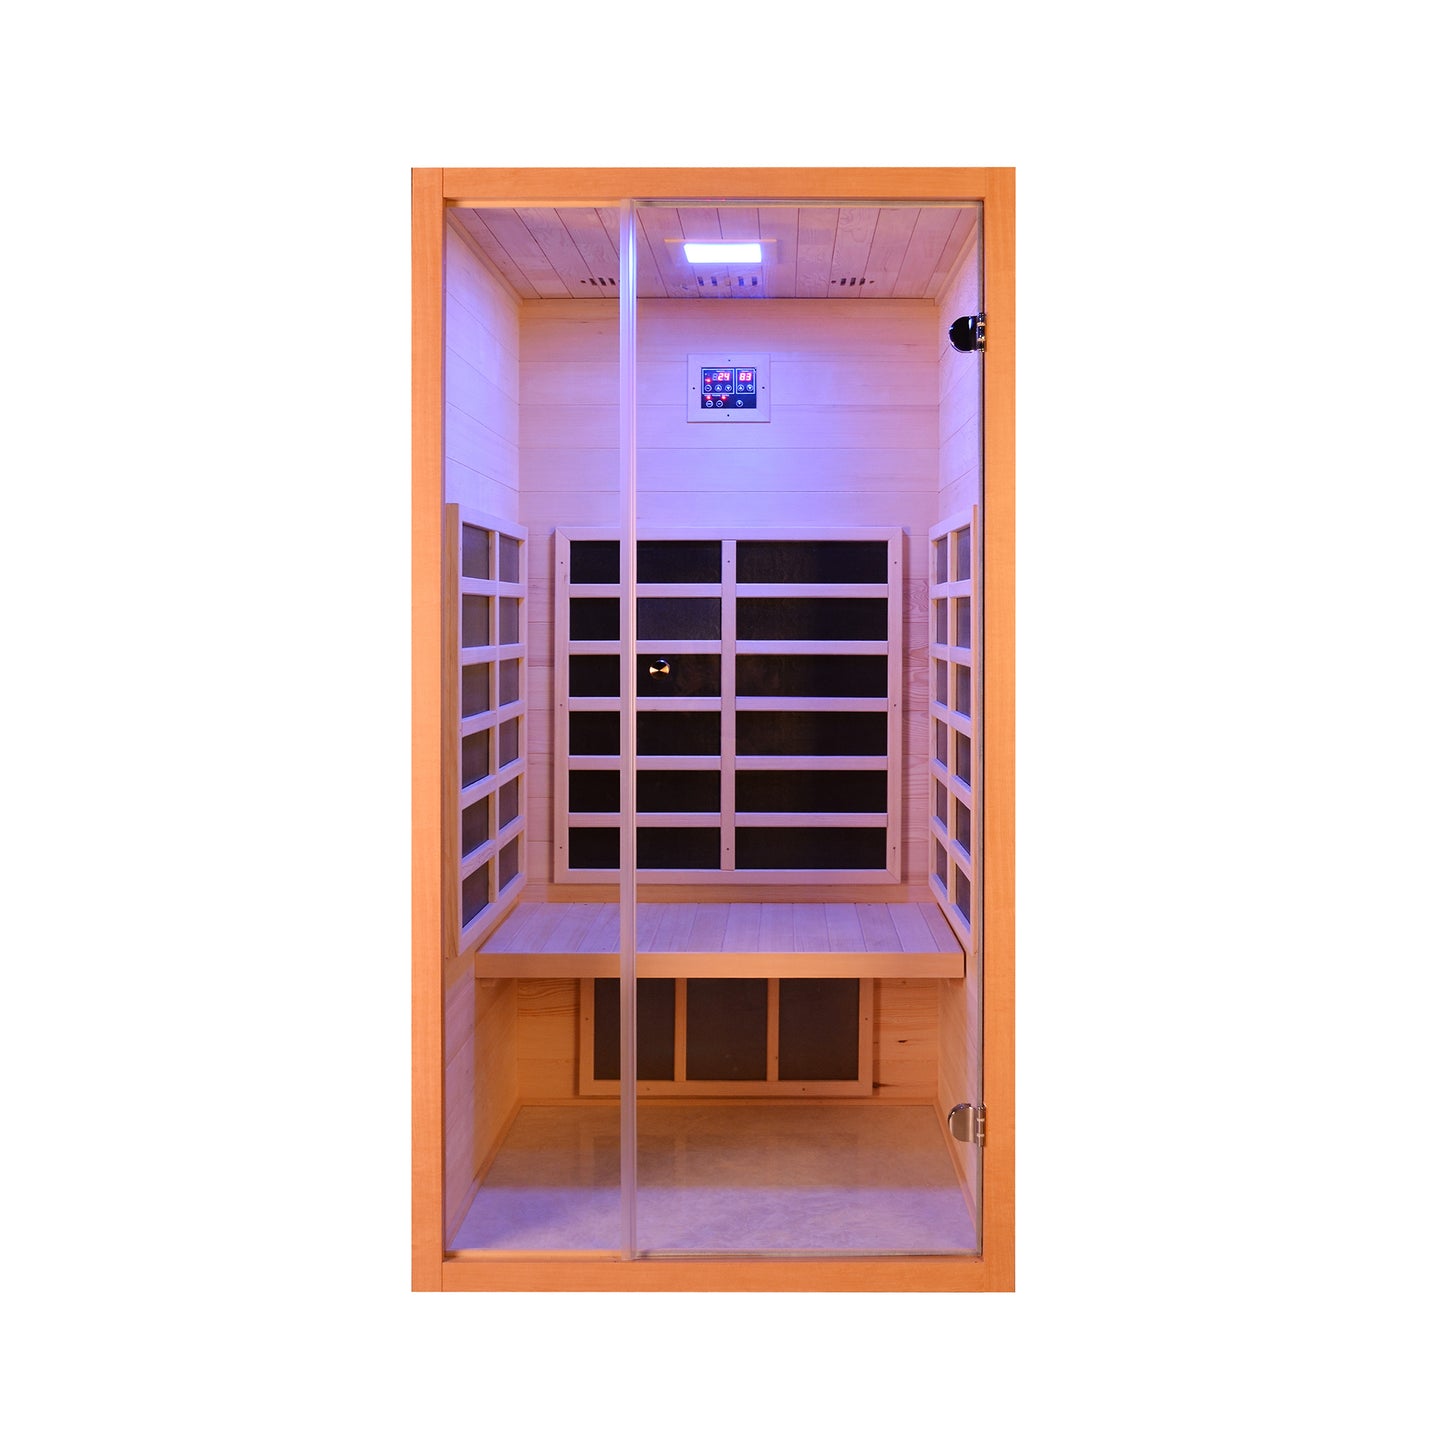 Ex Display - Jasper 1-Person FAR Infrared Sauna - 12 Month Warranty